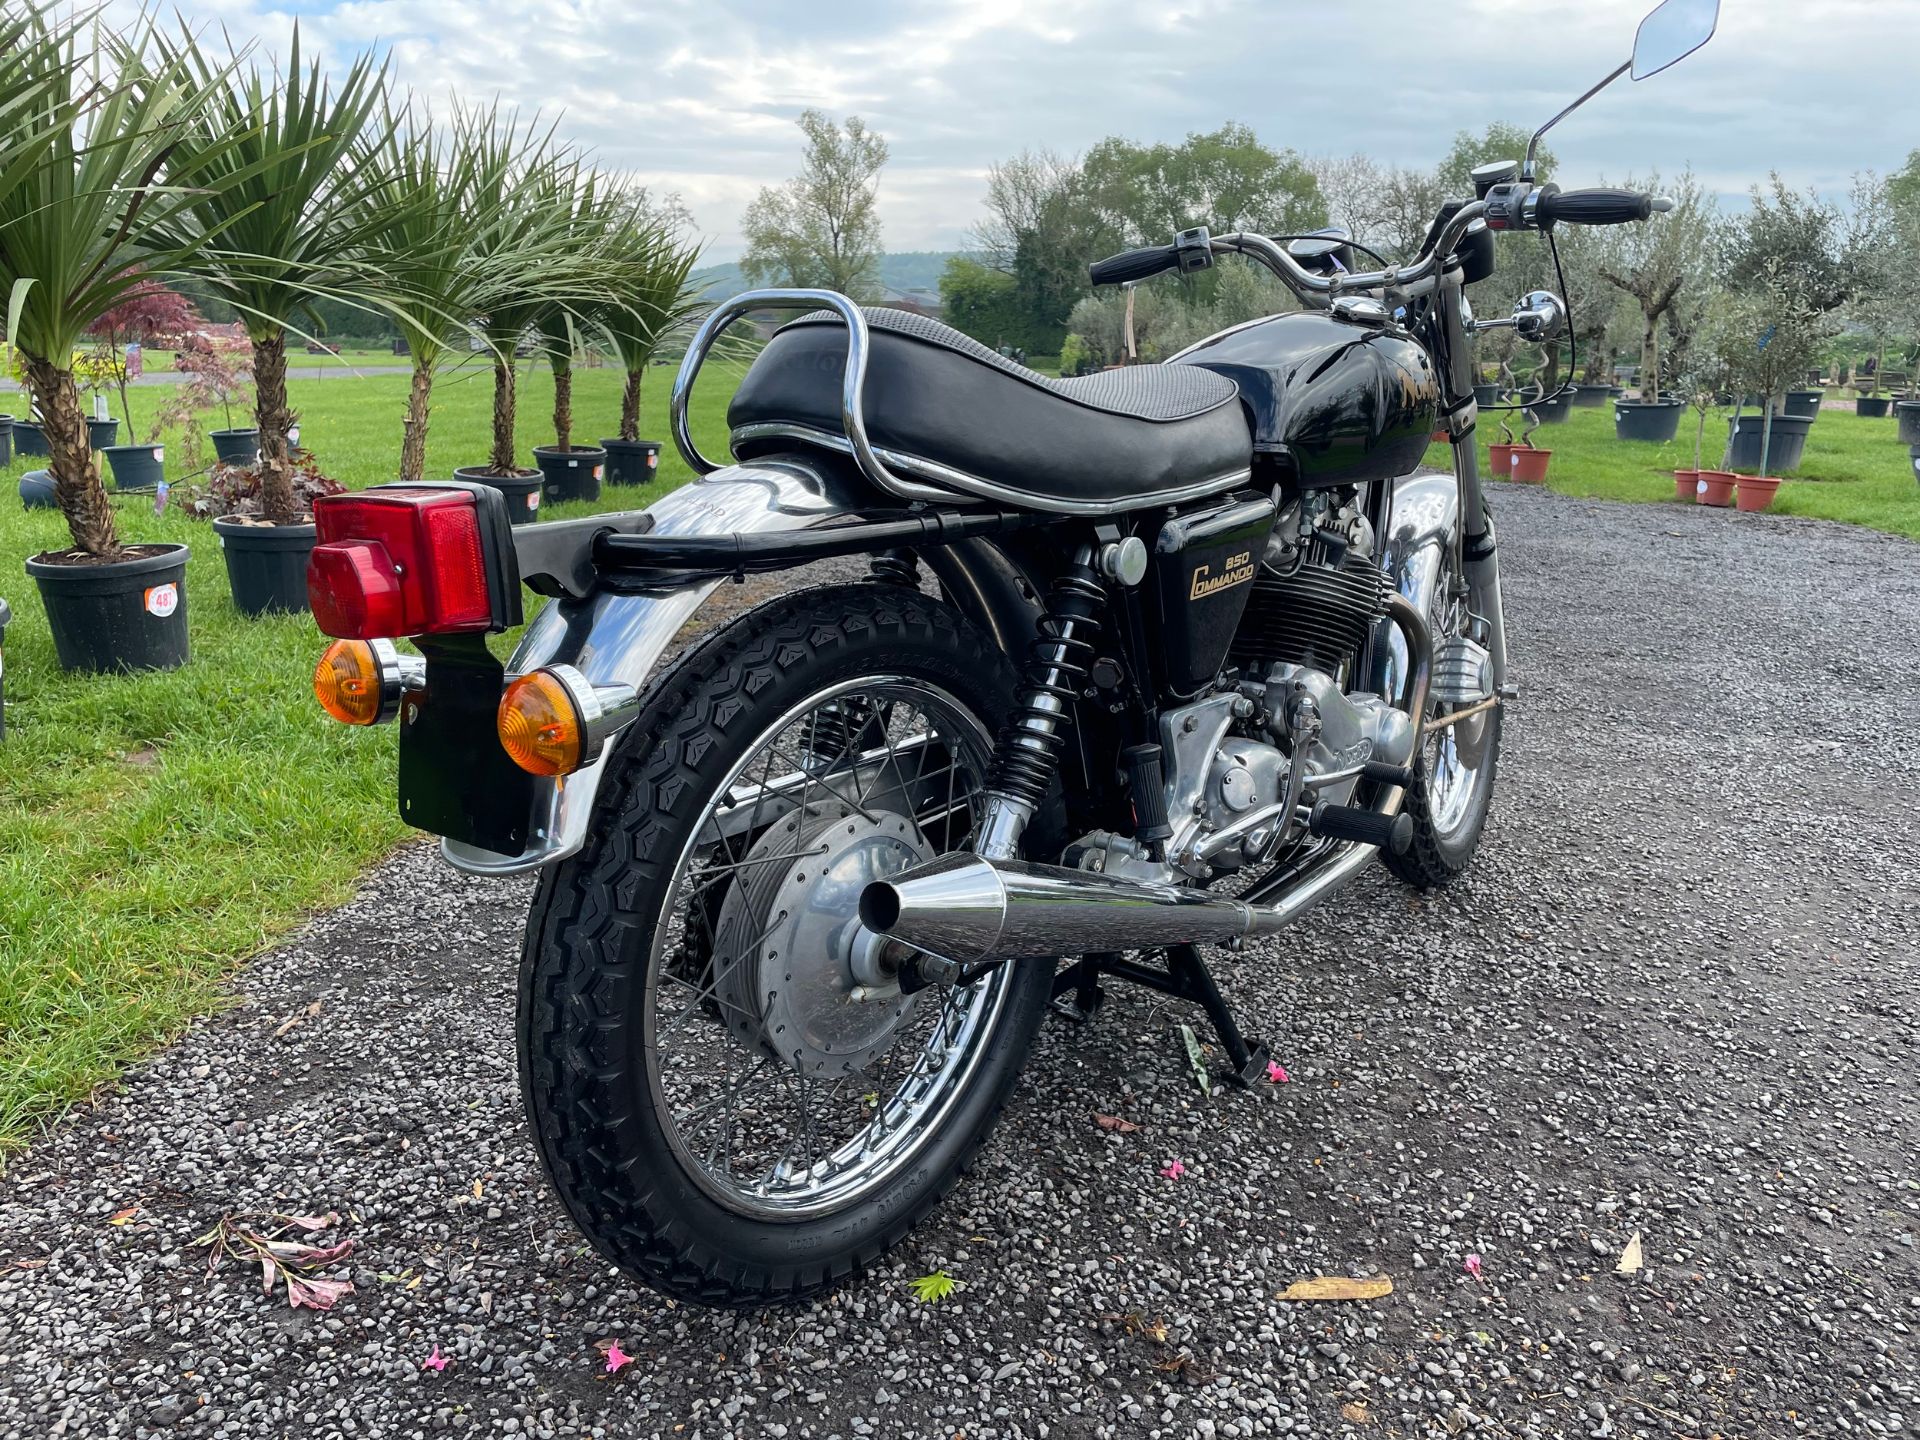 Norton Commando 850 motorcycle - Image 3 of 9